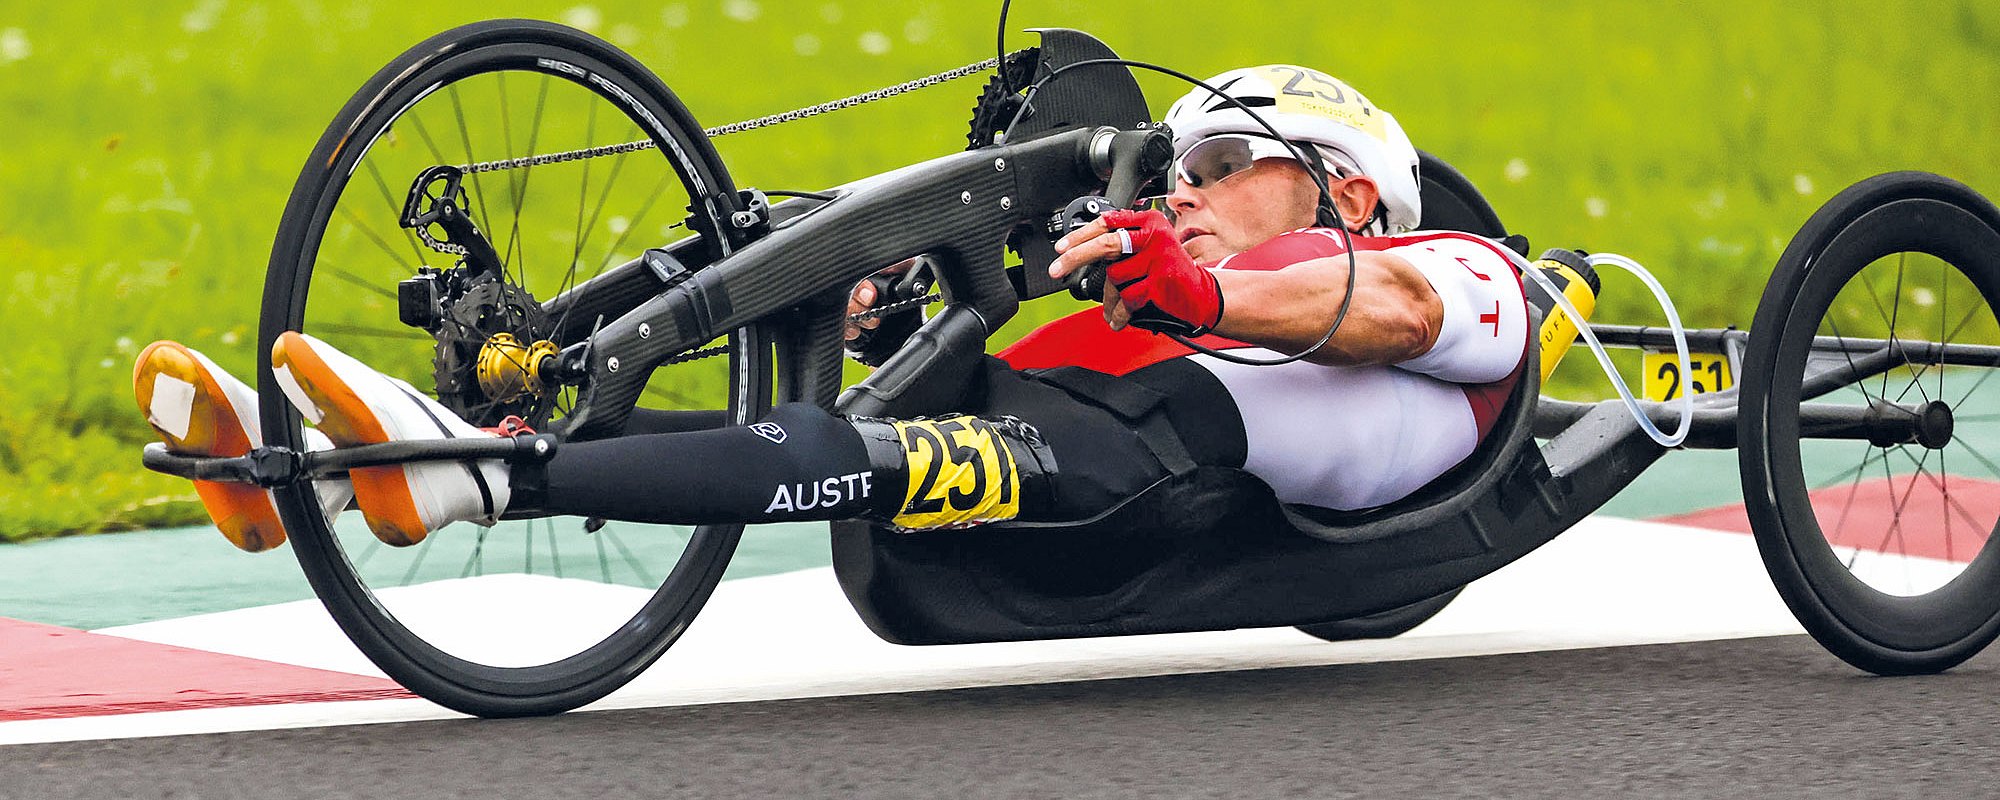 Walter Ablinger auf seinem Speed-Handbike liegend auf einer Rennstrecke bei einem Wettkampf